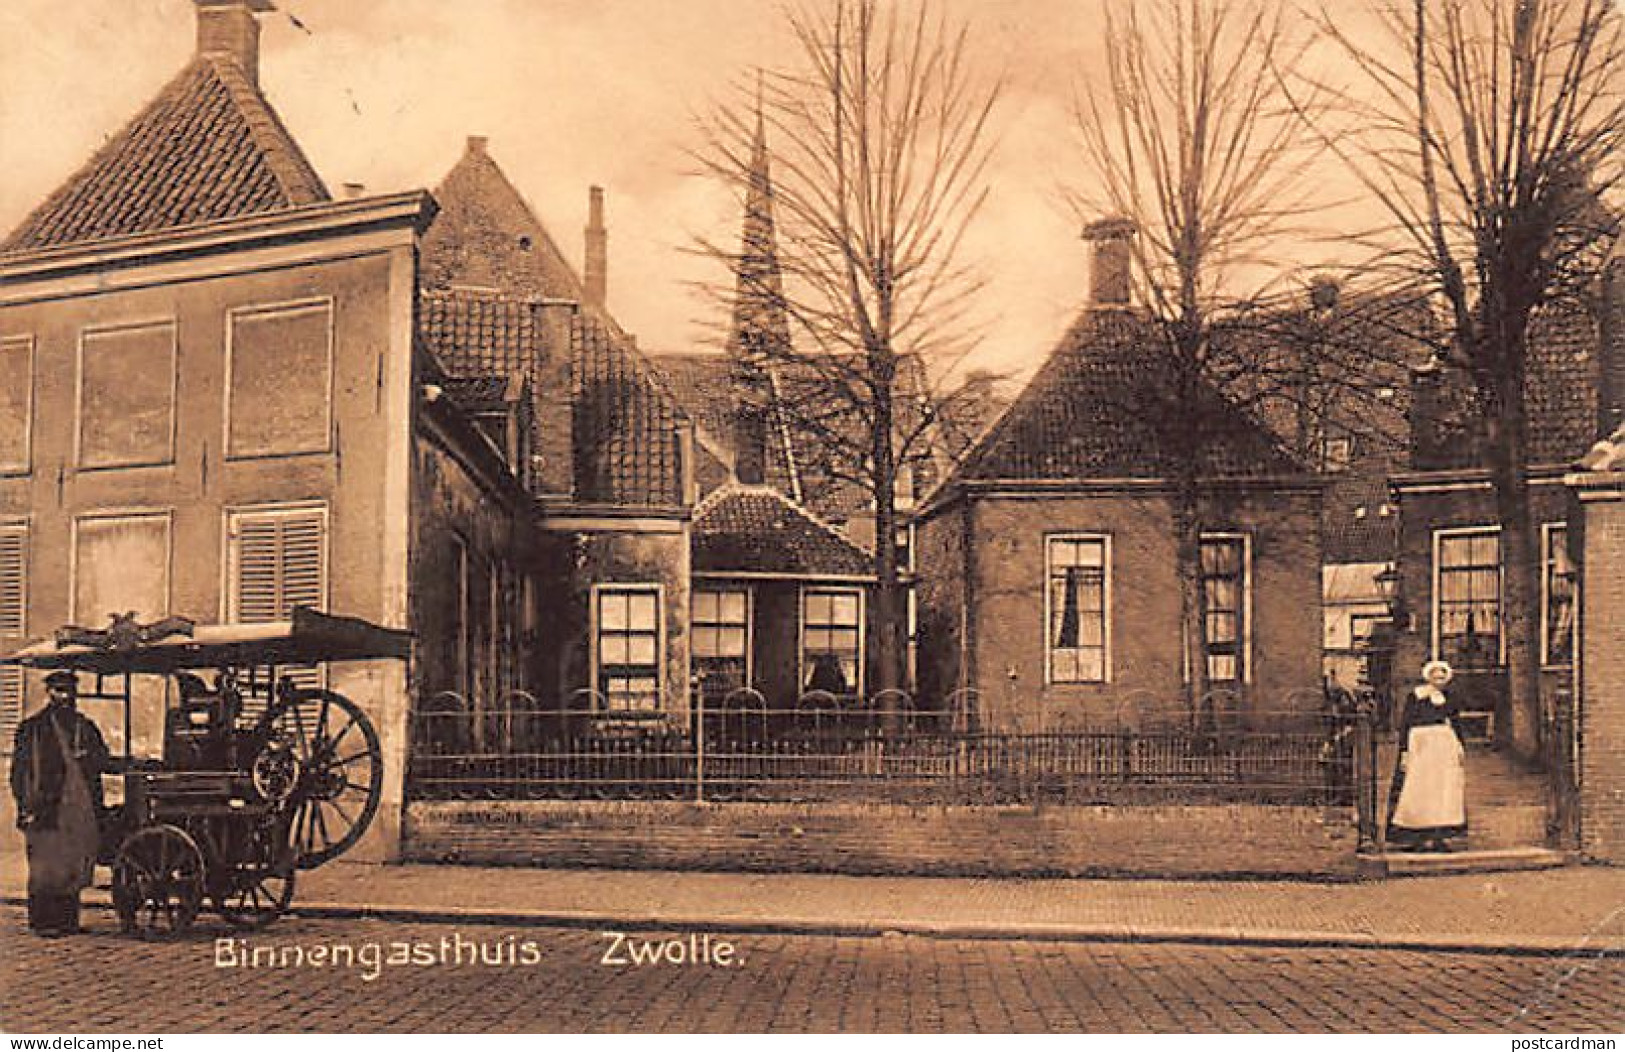 Nederland - ZWOLLE - Binnengasthuis - Scharensliep - Zwolle